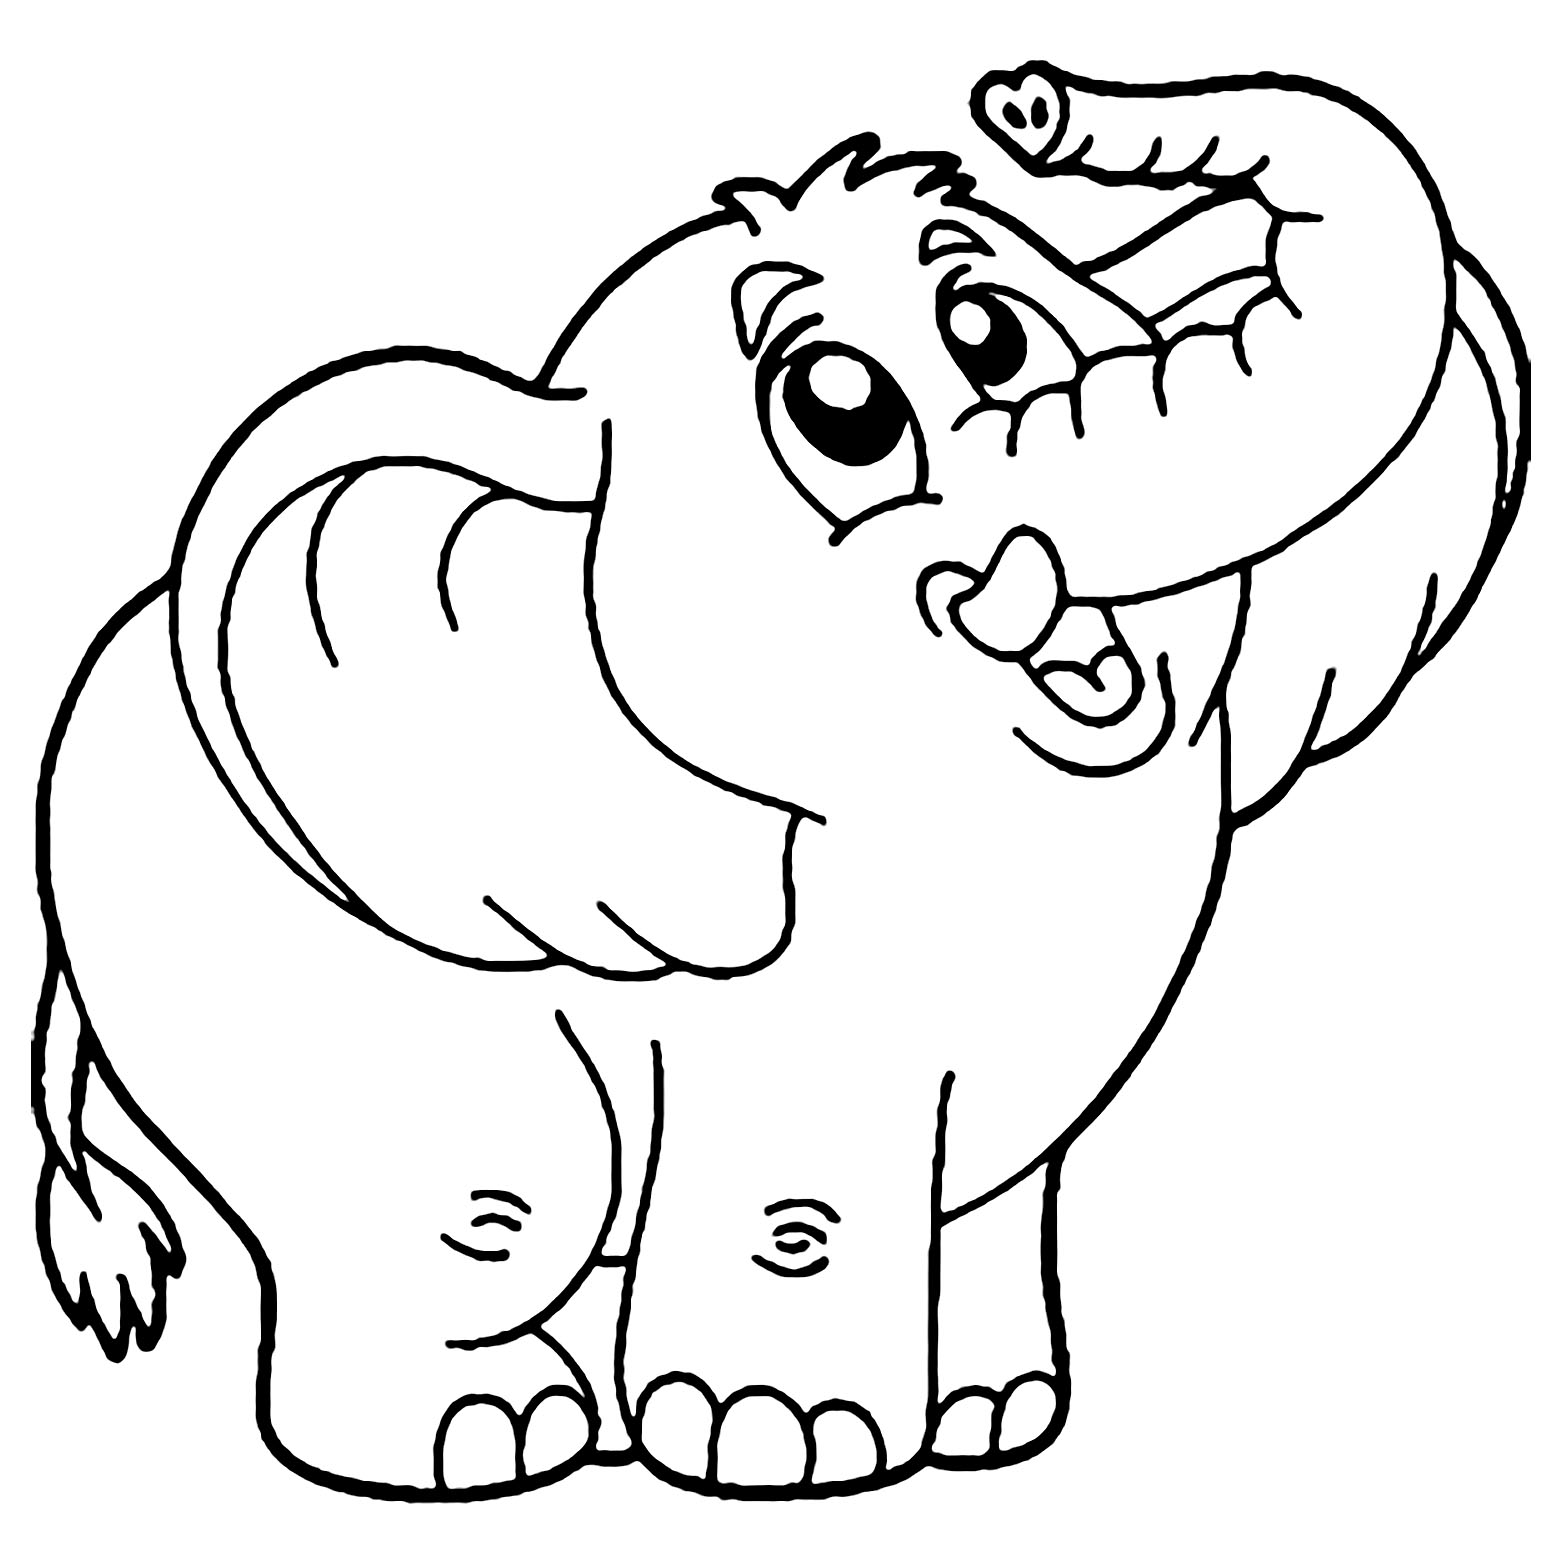 Vẽ Con Voi  Dạy bé vẽ và tô màu con Voi  How to Draw an Elephant Easy  Duy Hiếu  YouTube